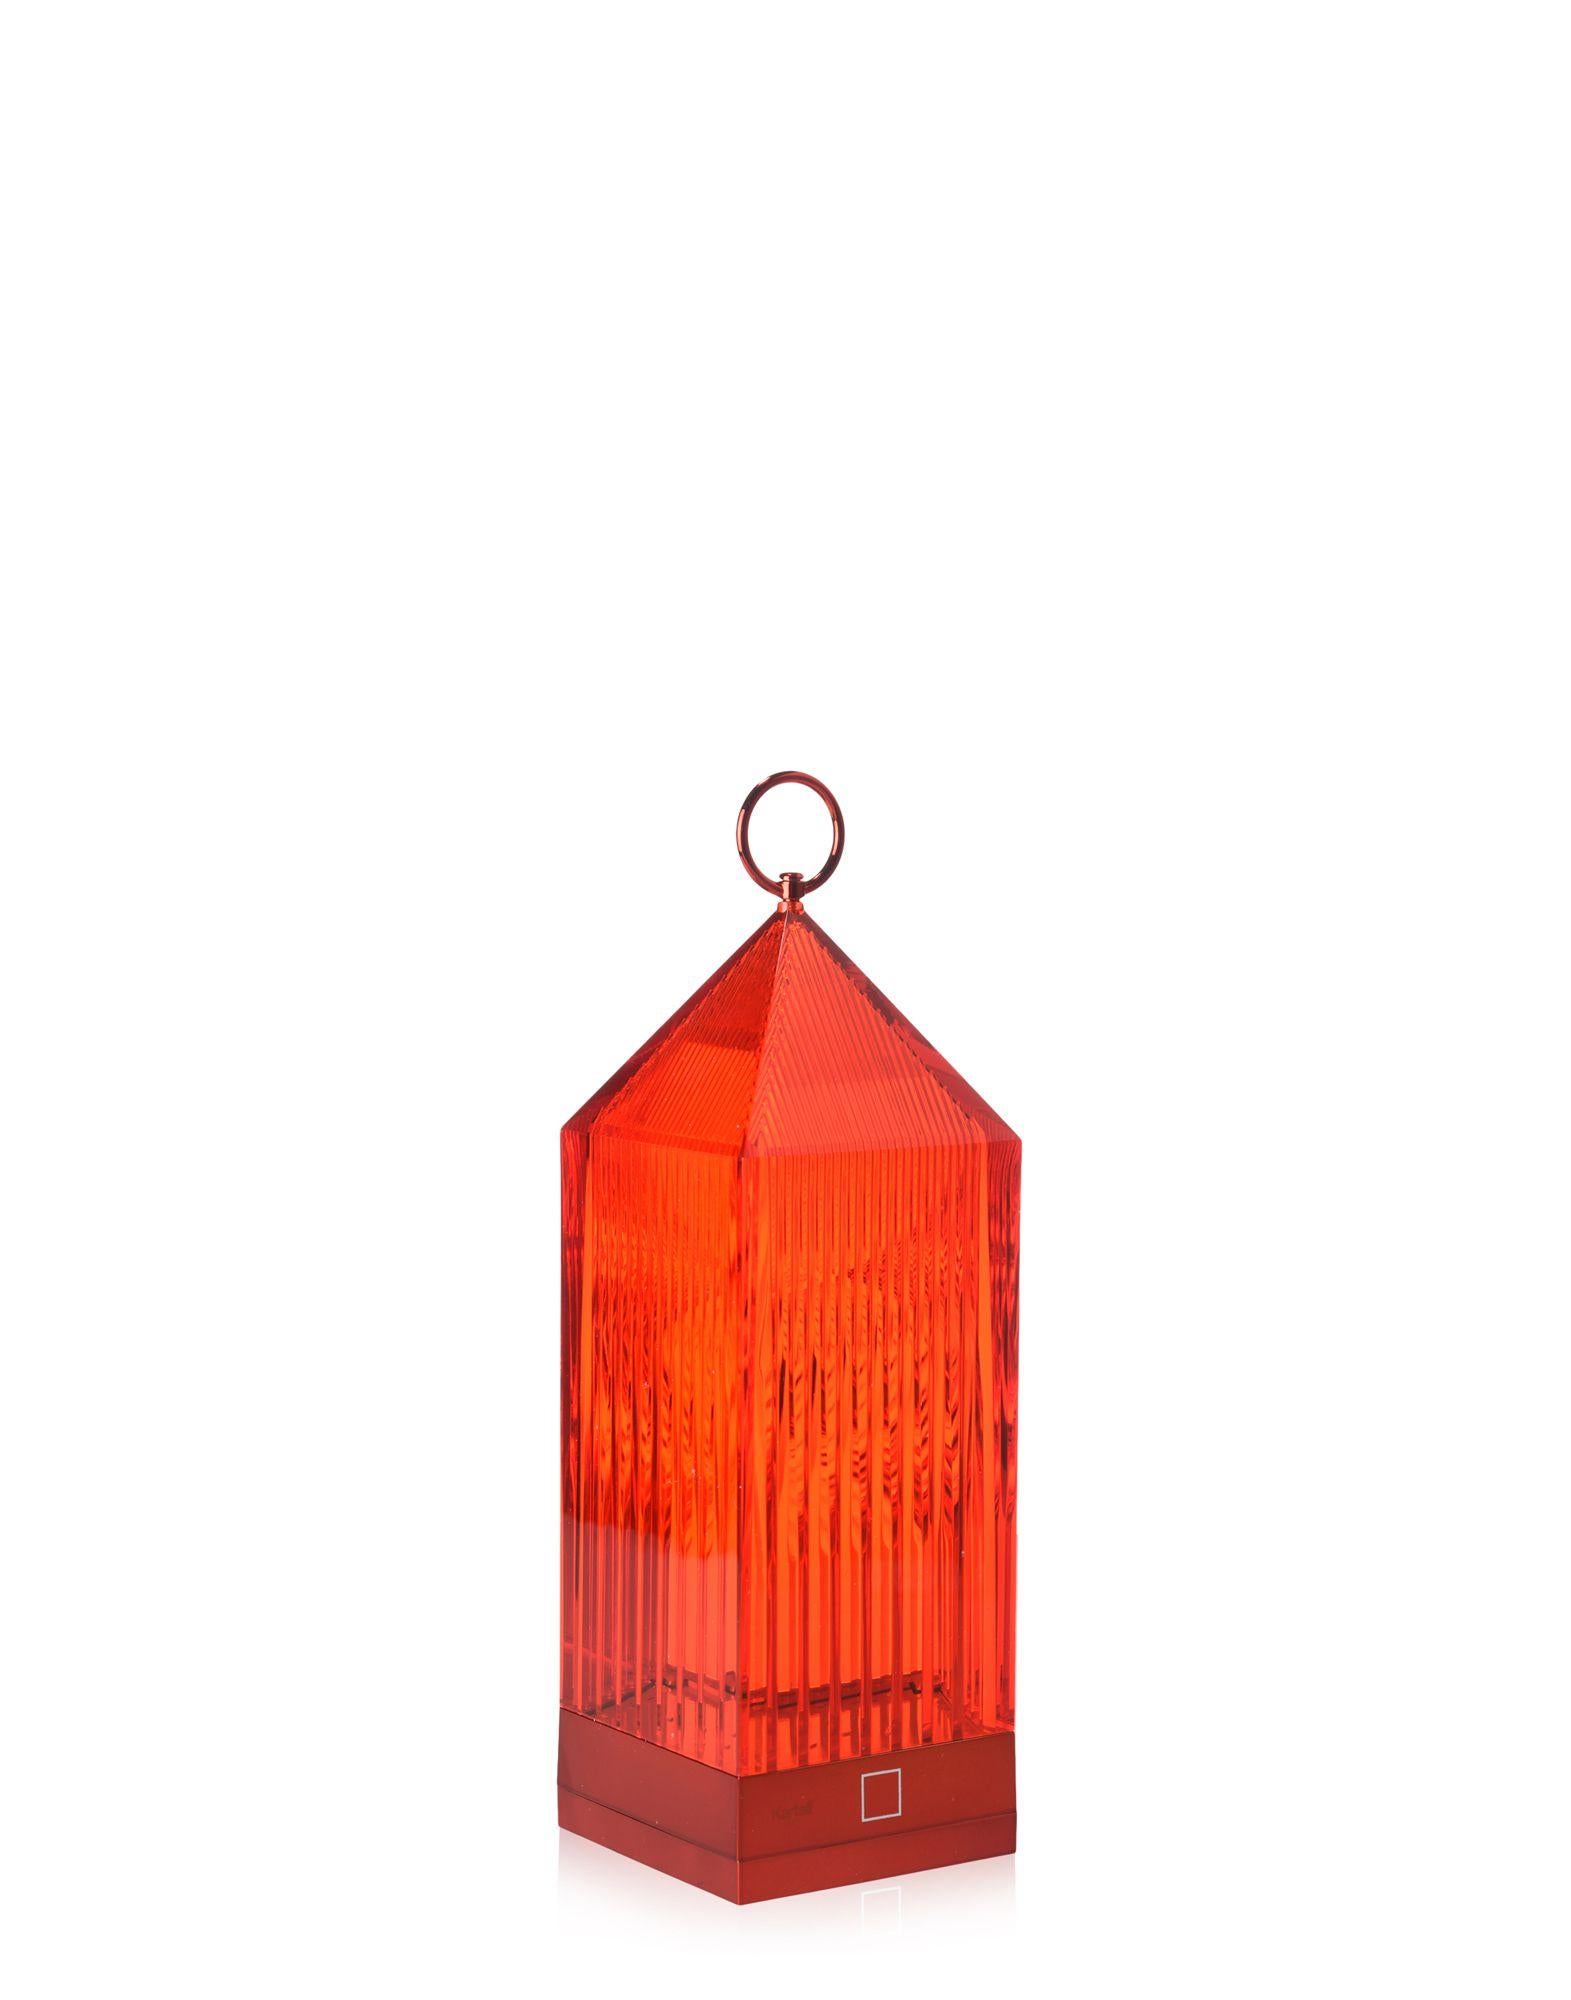 Lantern de Fabio Novembre est une lampe portable originale à LED, transparente, 